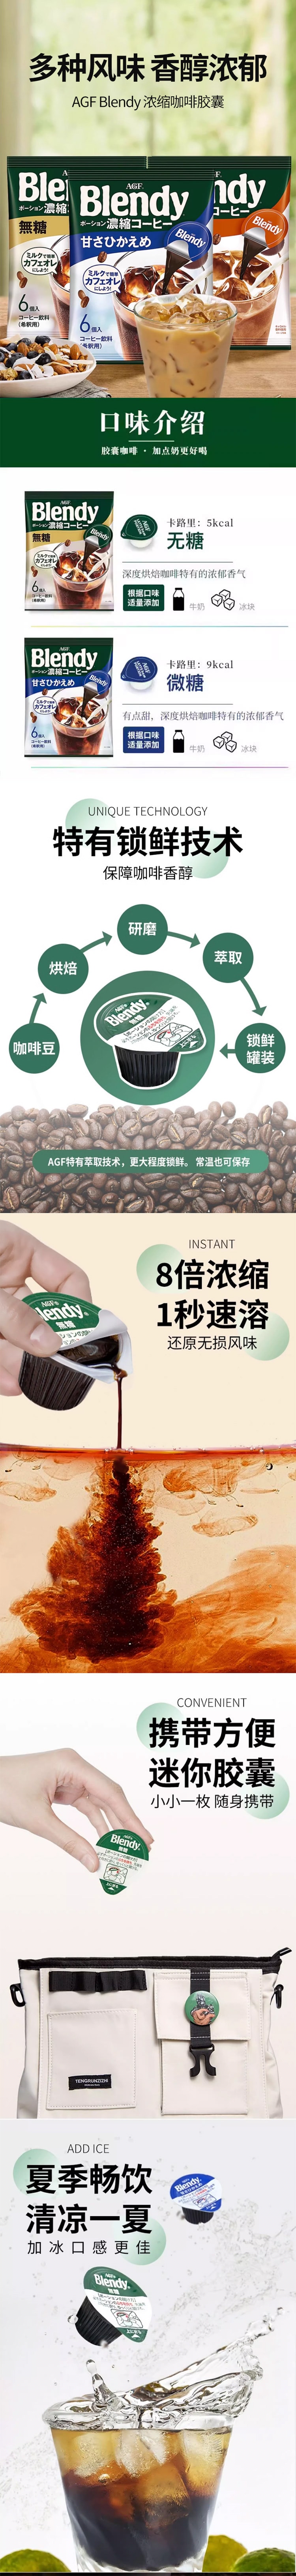 【日本直郵】日本AGF Blendy 濃縮膠囊咖啡 無糖型 6枚入